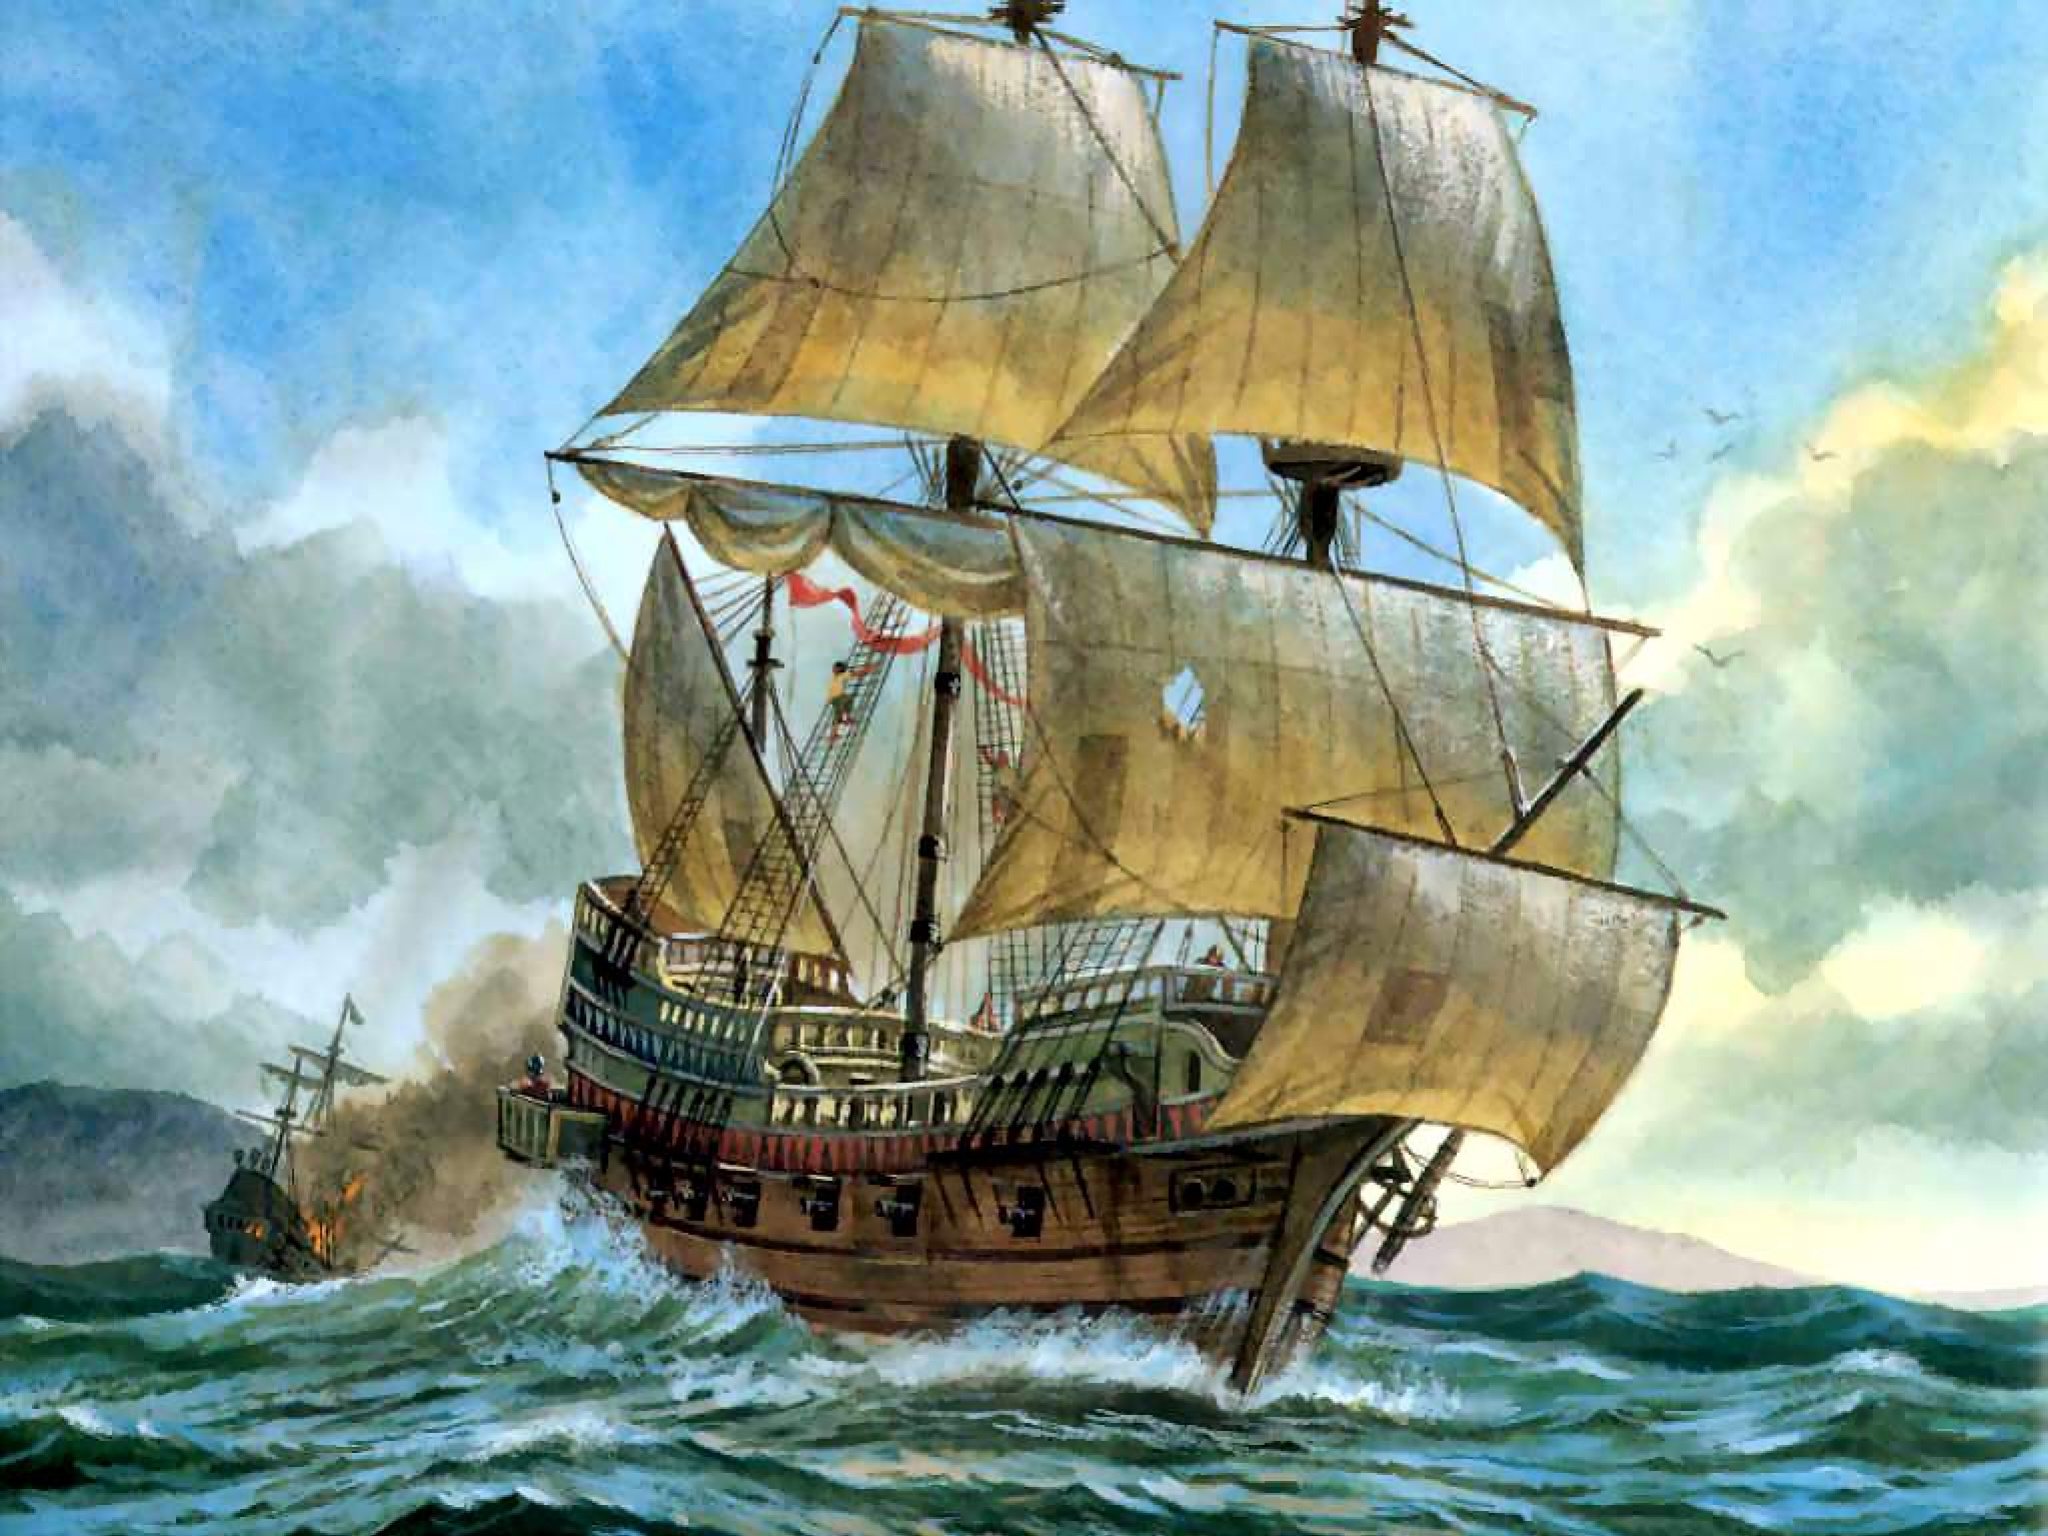 Томас Кавендиш: самый шустрый пират, который 200 лет обладал мировым рекордом скорости история,личности,Мужское,пираты,Томас Кавендиш